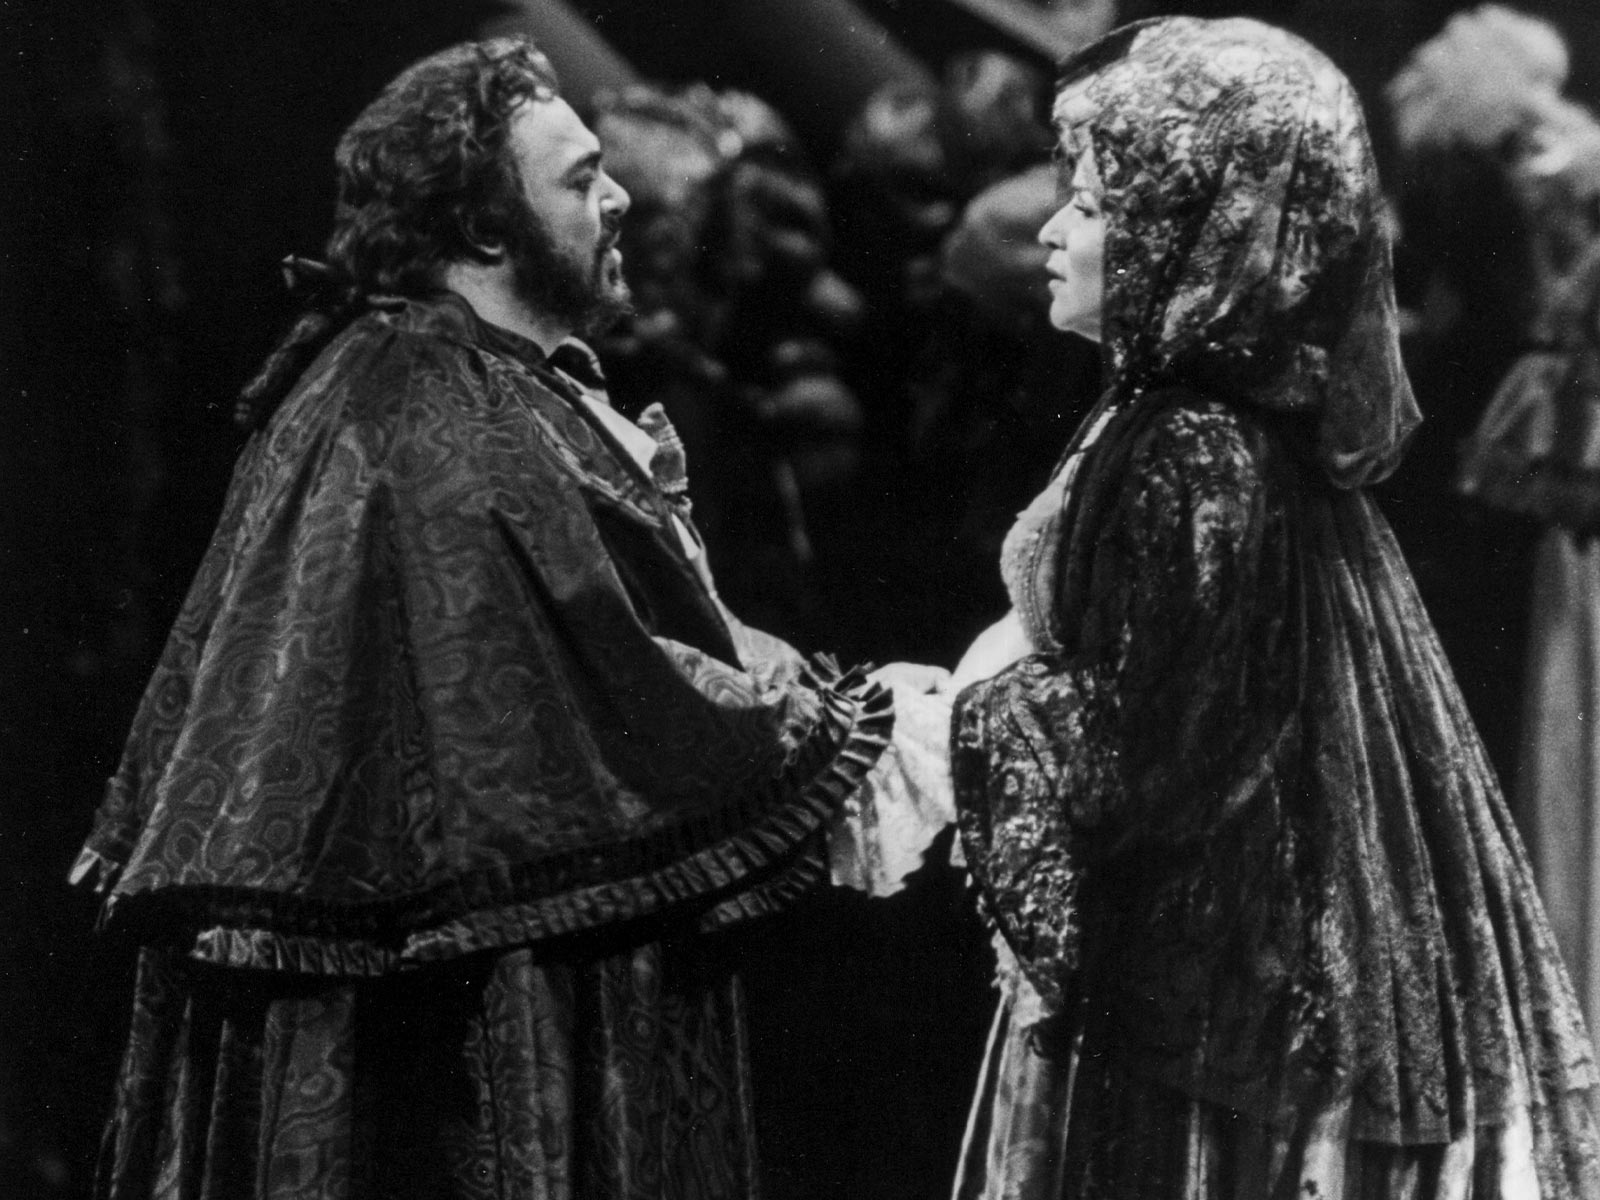 Pavarotti, Luciano_Ballo in Maschera, Un_Riccardo_with Aprile Millo as Amelia.jpg